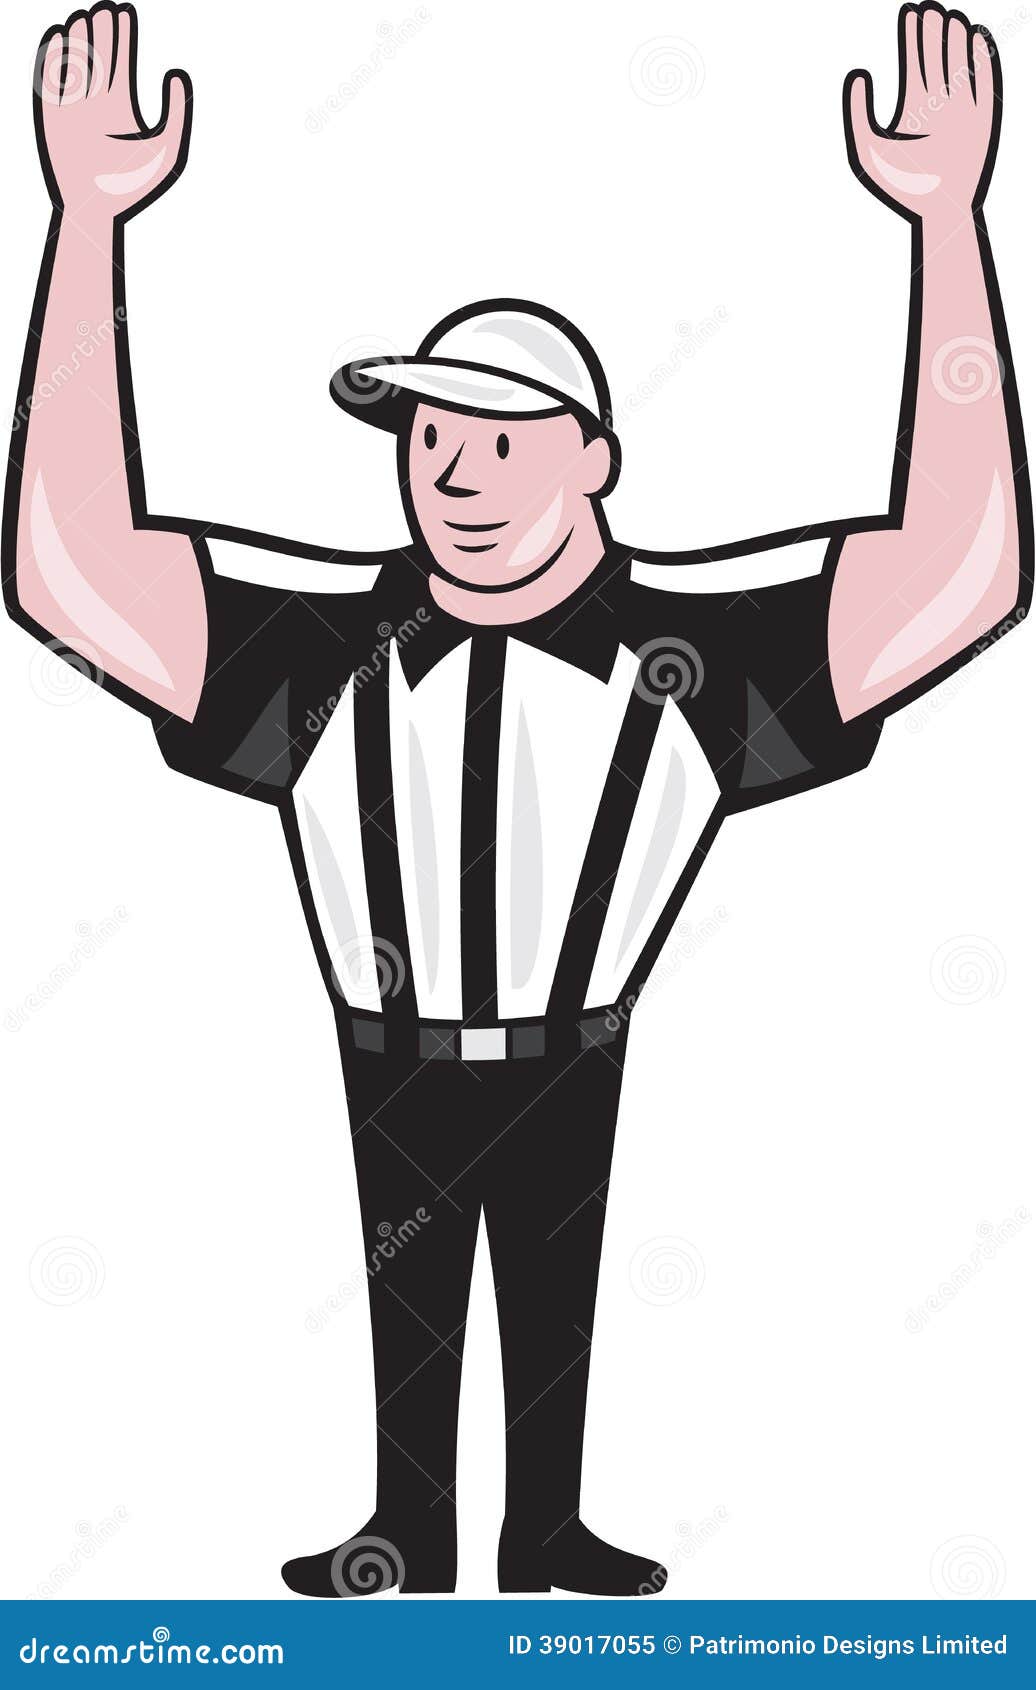 football referee clipart - photo #11